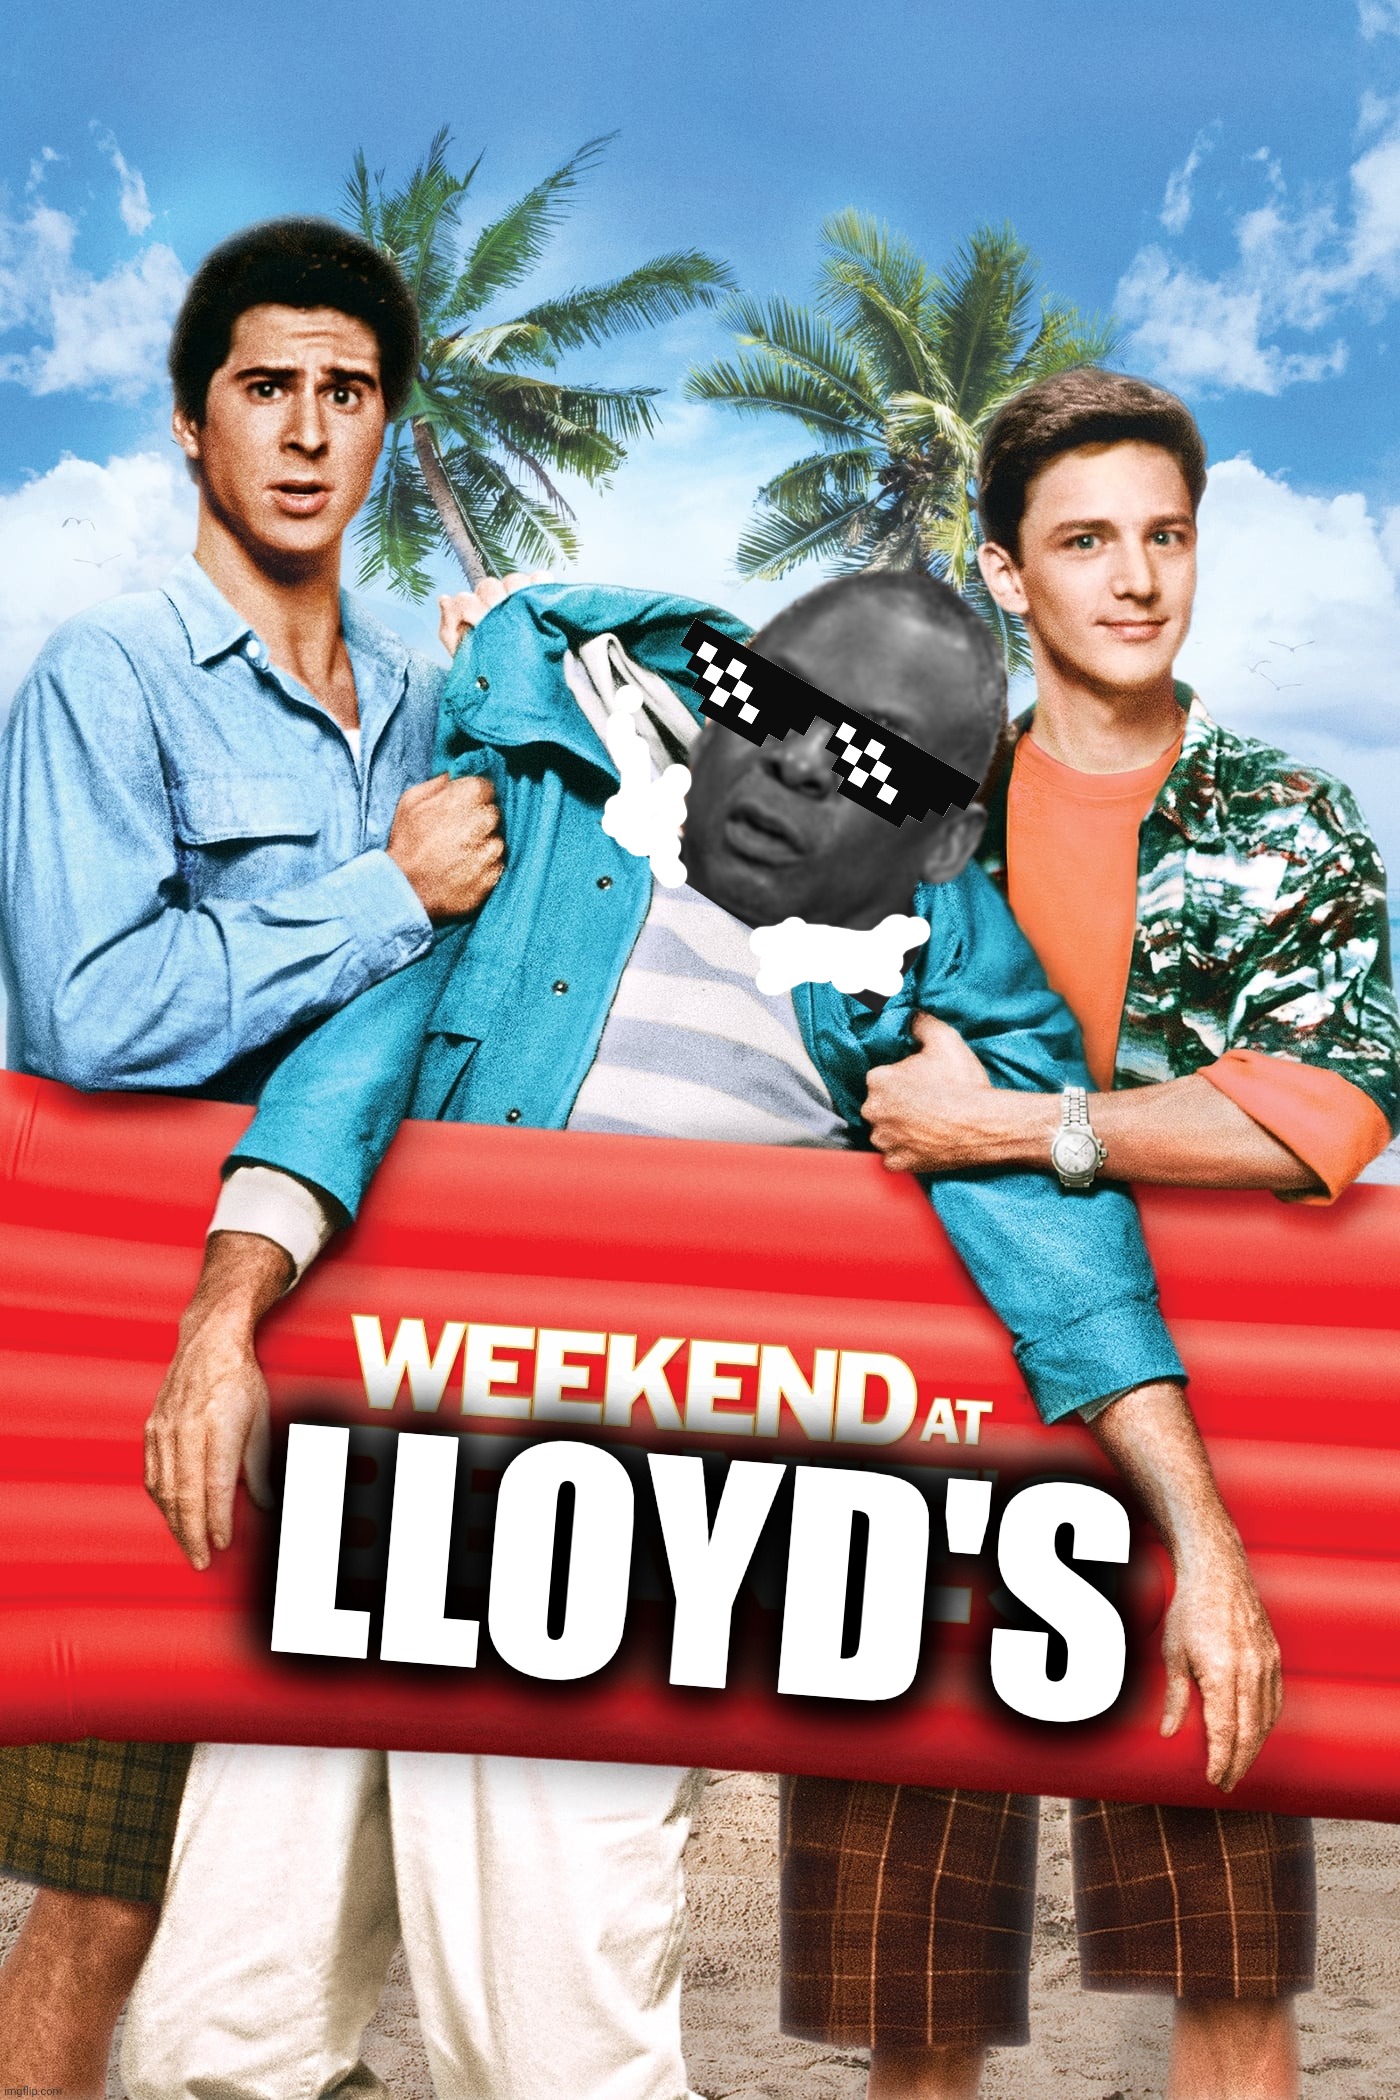 LLOYD'S | made w/ Imgflip meme maker